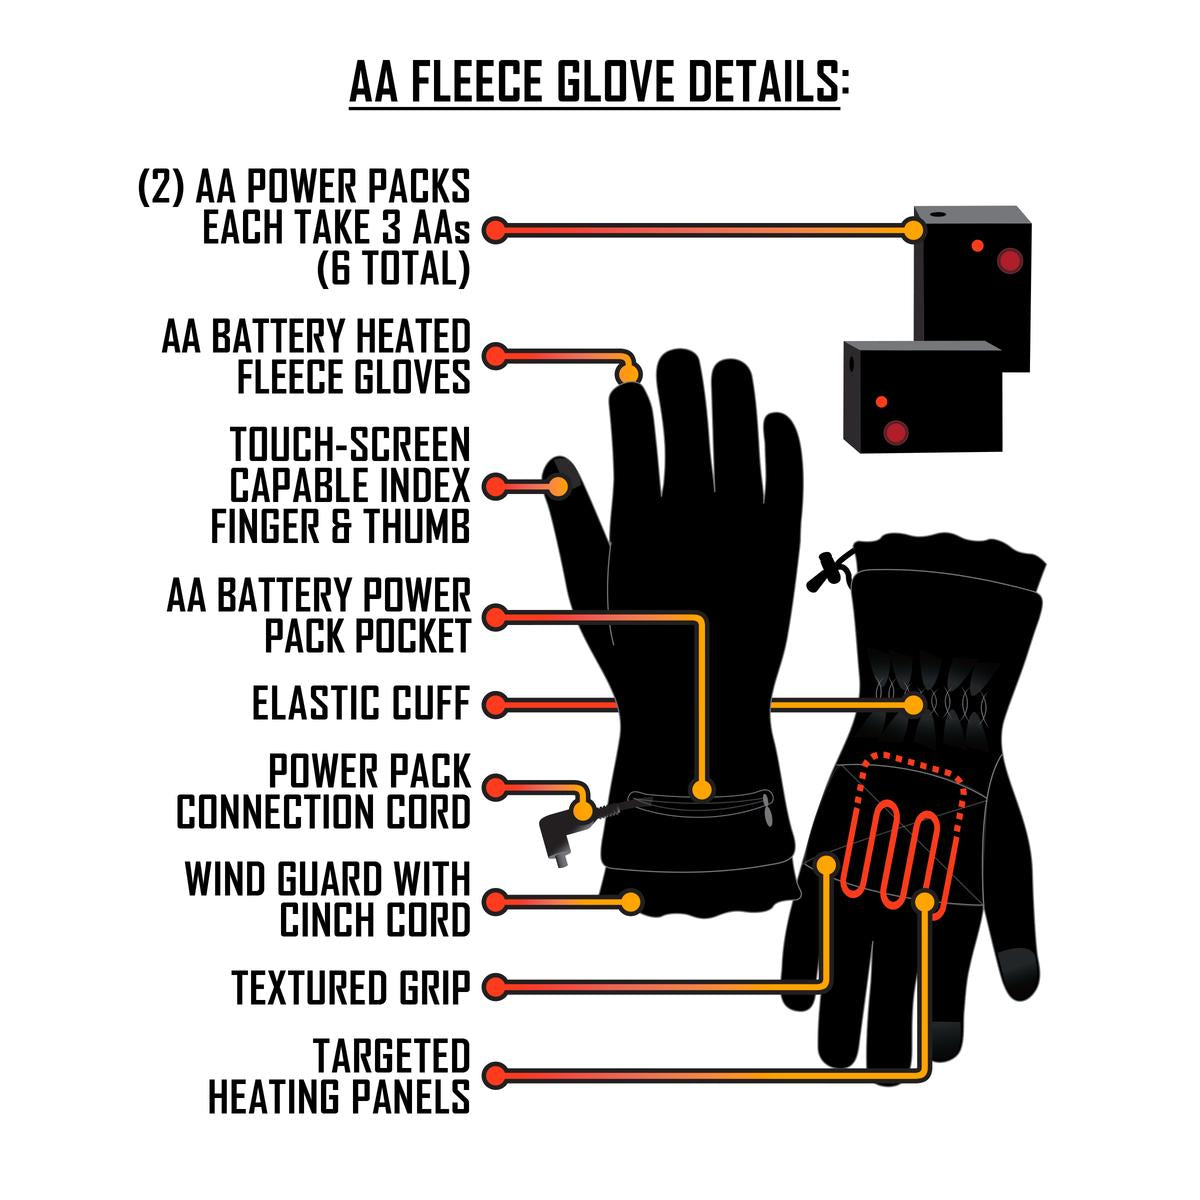 ActionHeat AA Battery Heated Fleece Gloves - Battery